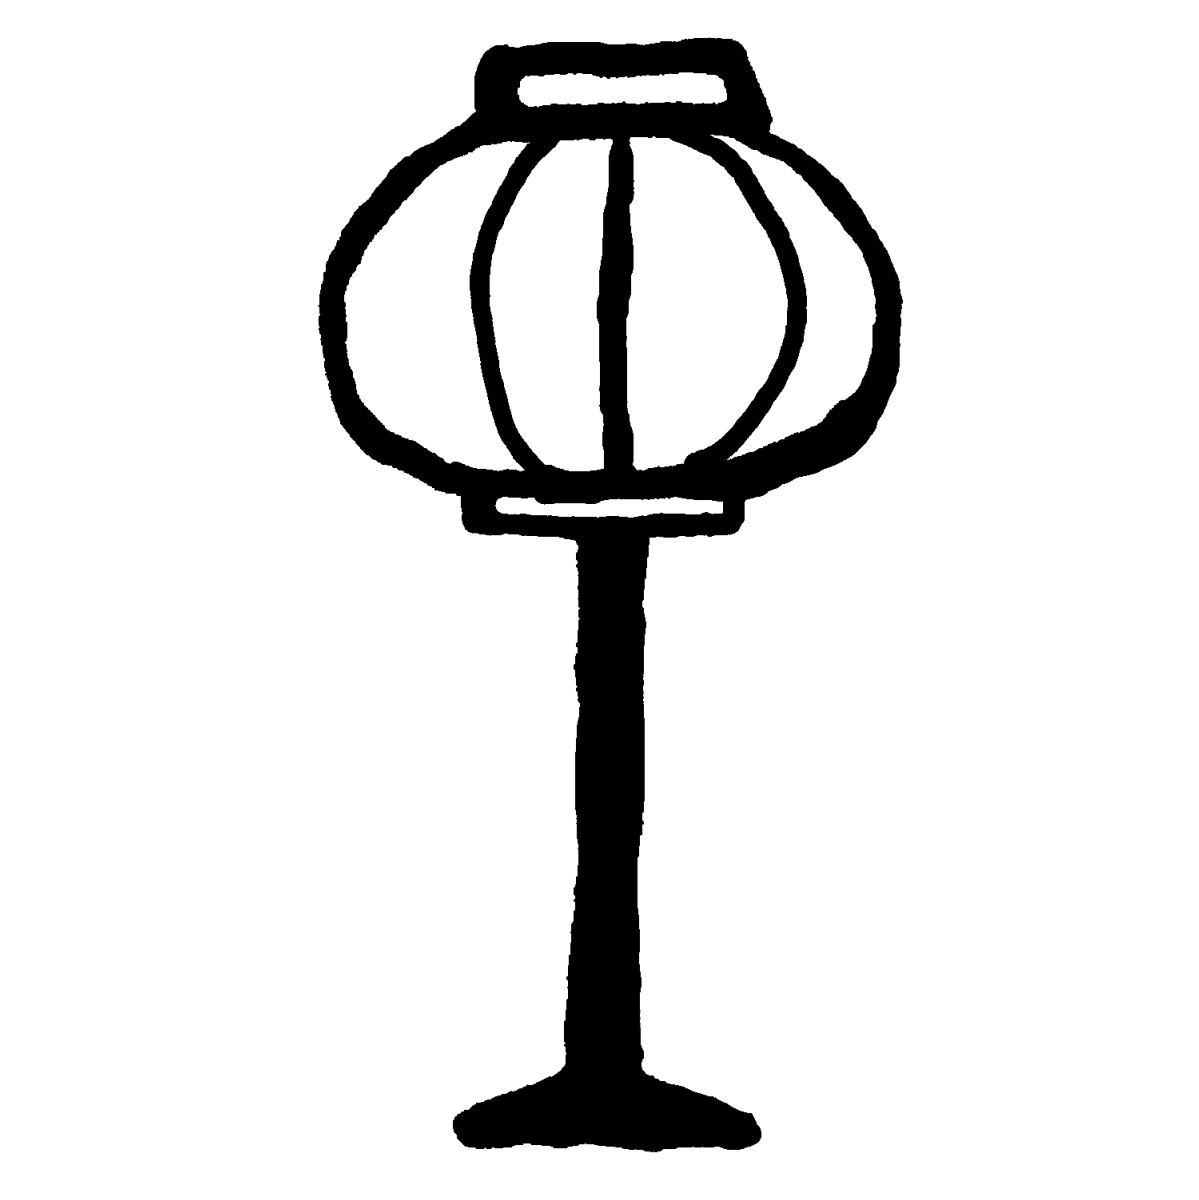 雪洞（ぼんぼり）のイラスト / paper-covered lamp or lantern Illustration